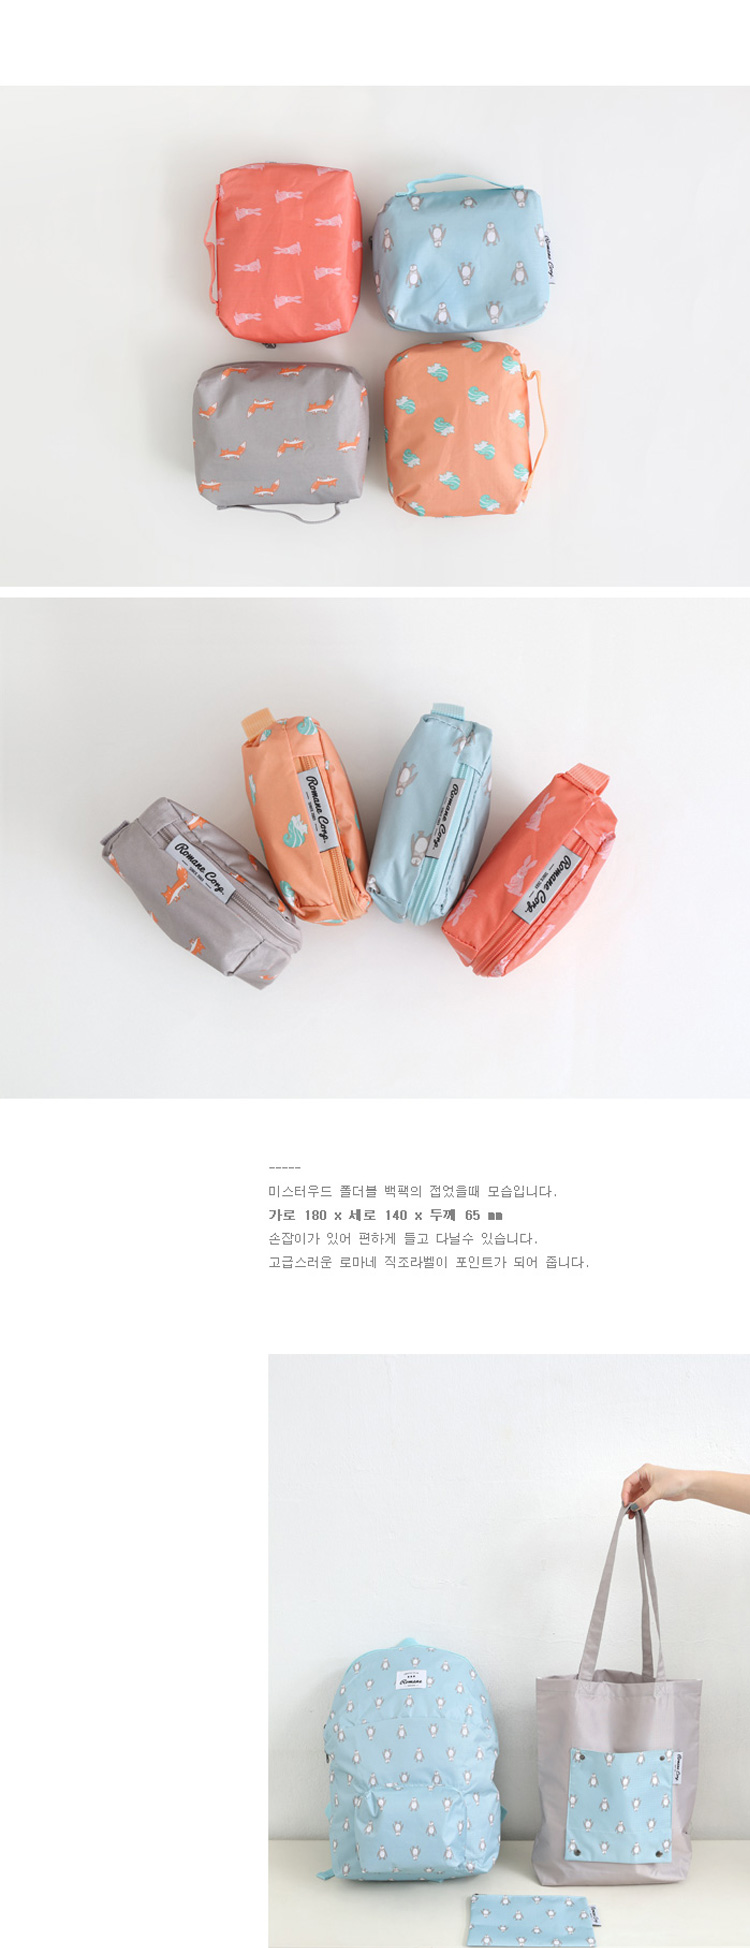 韩国卡通动物可爱折叠双肩包超轻便携户外旅游背包学生书包收纳袋7